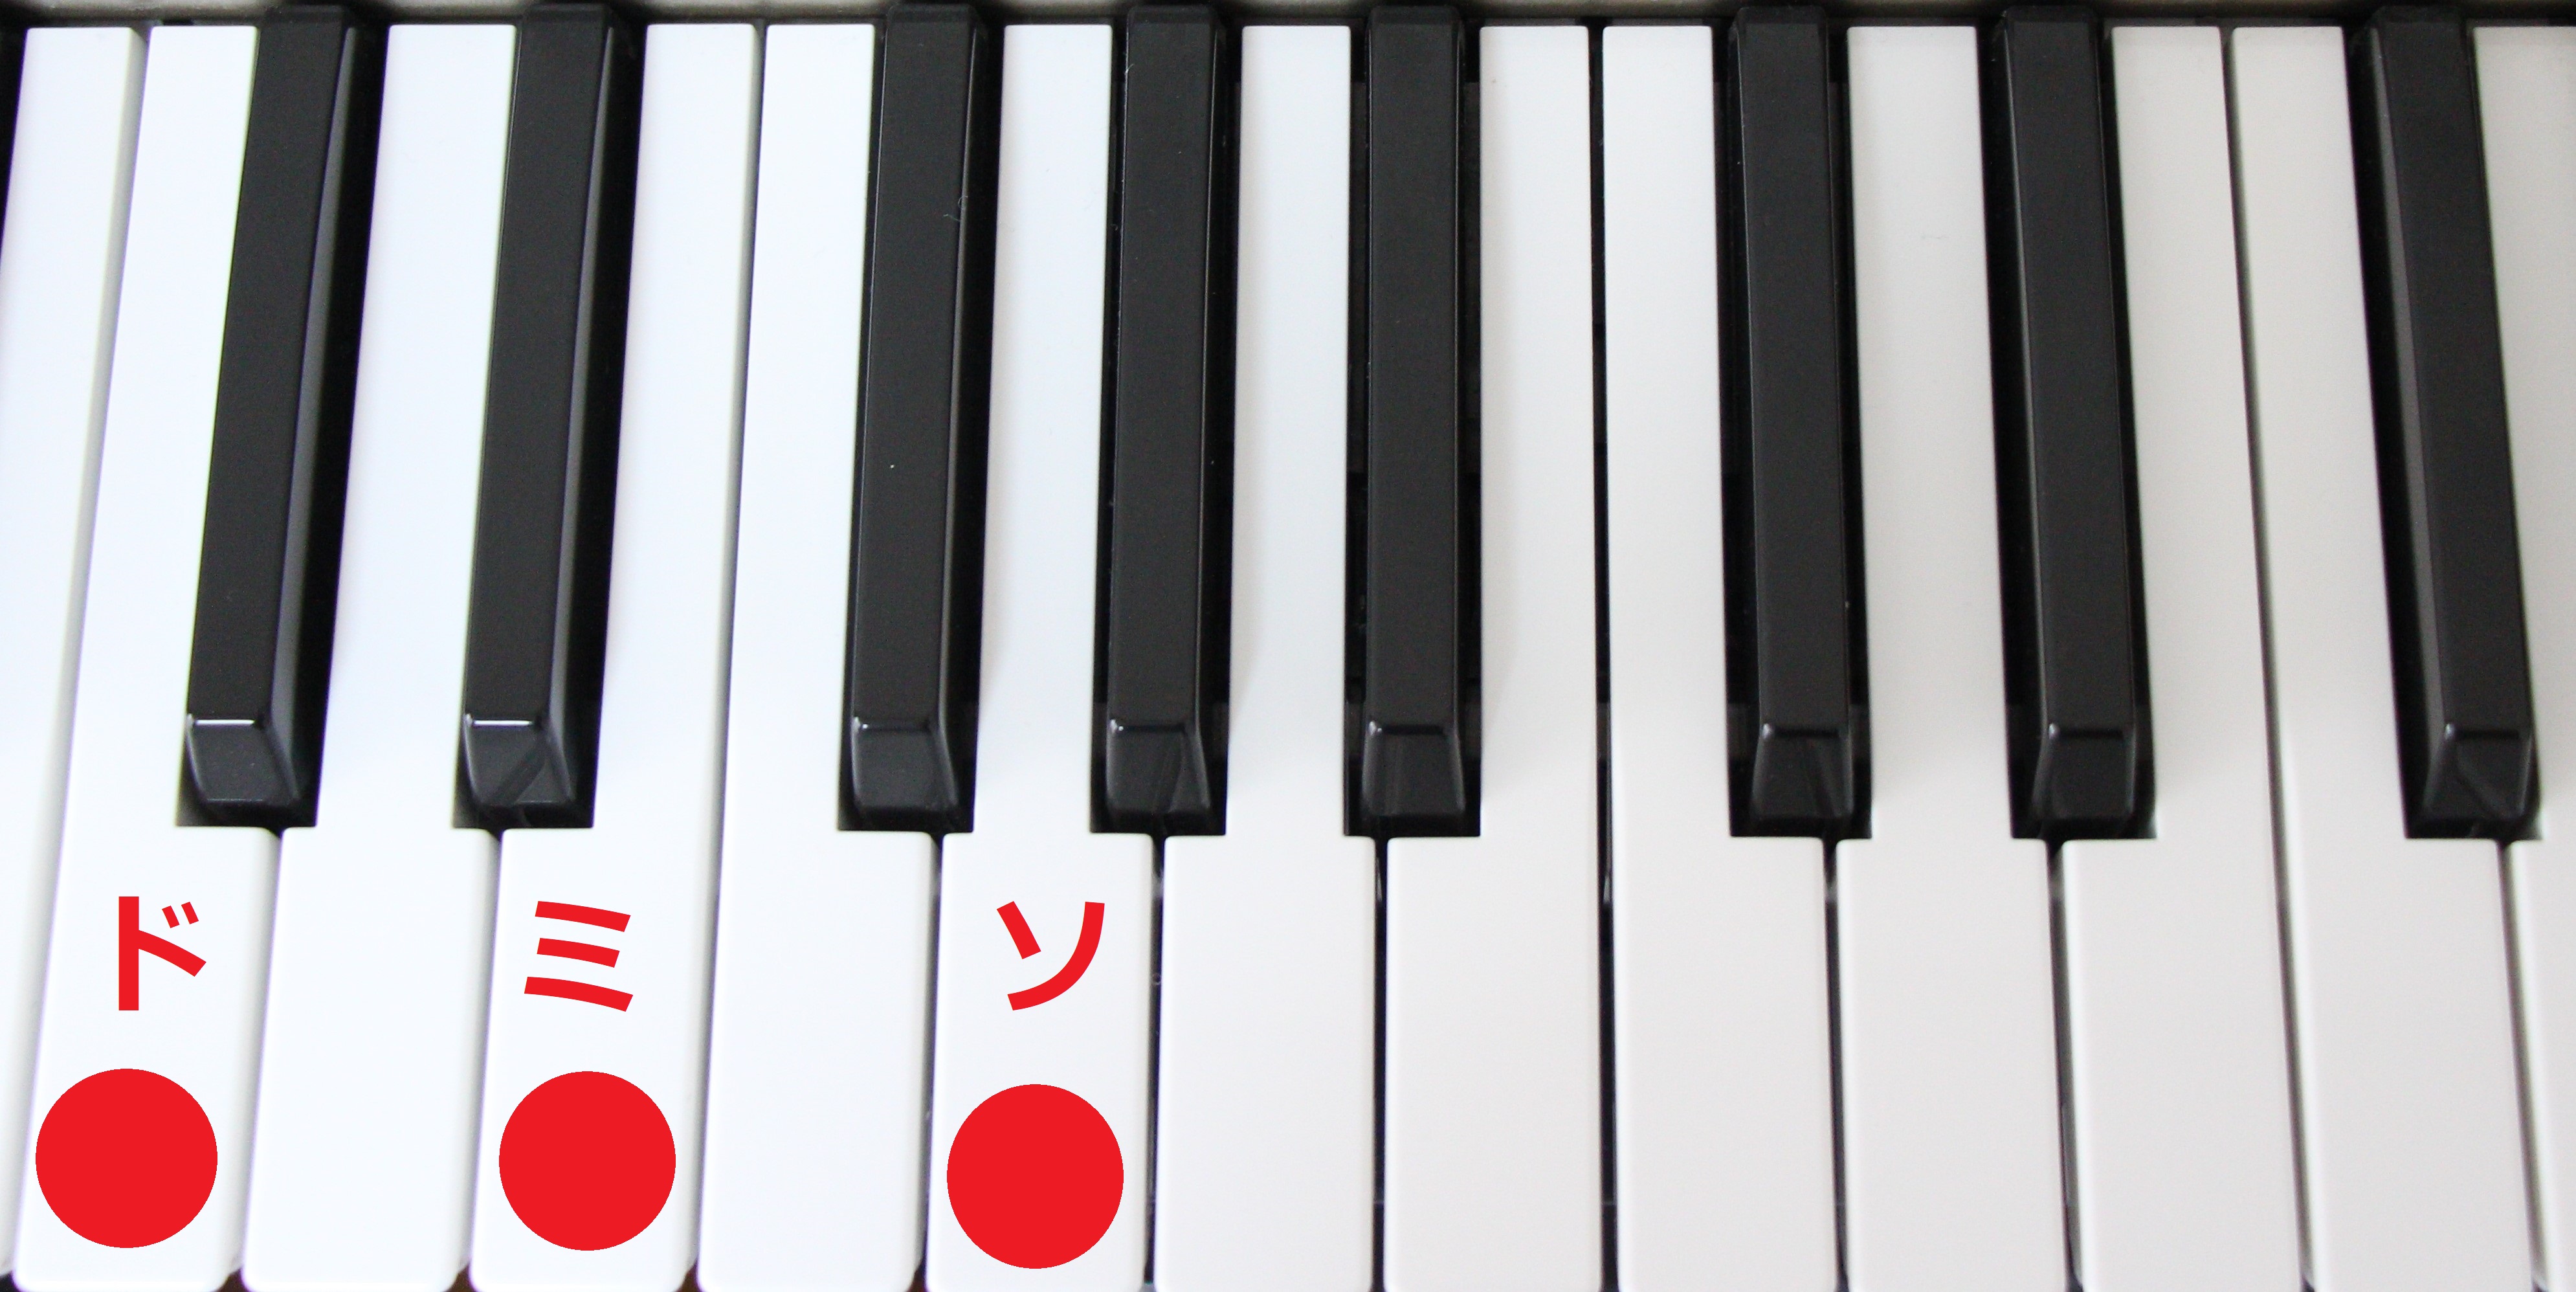 ピアノコードの簡単な覚え方と練習法 解説画像 動画付き 大人のピアノ初心者が上達する練習方法を解説するブログ